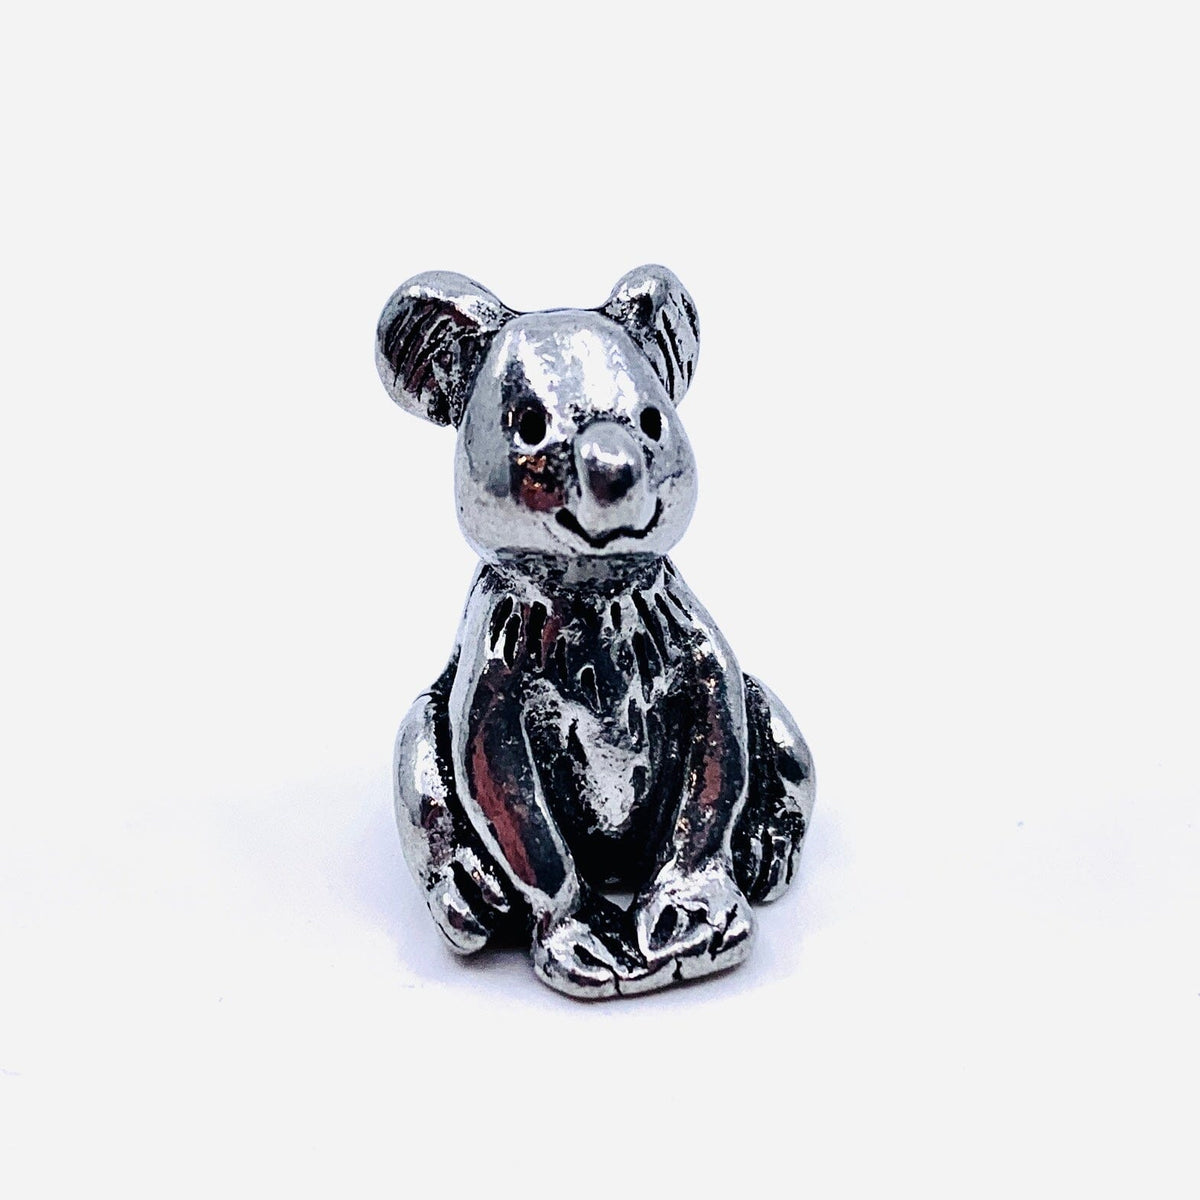 Miniature Pewter Figurine, Koala Miniature Basic Spirit 